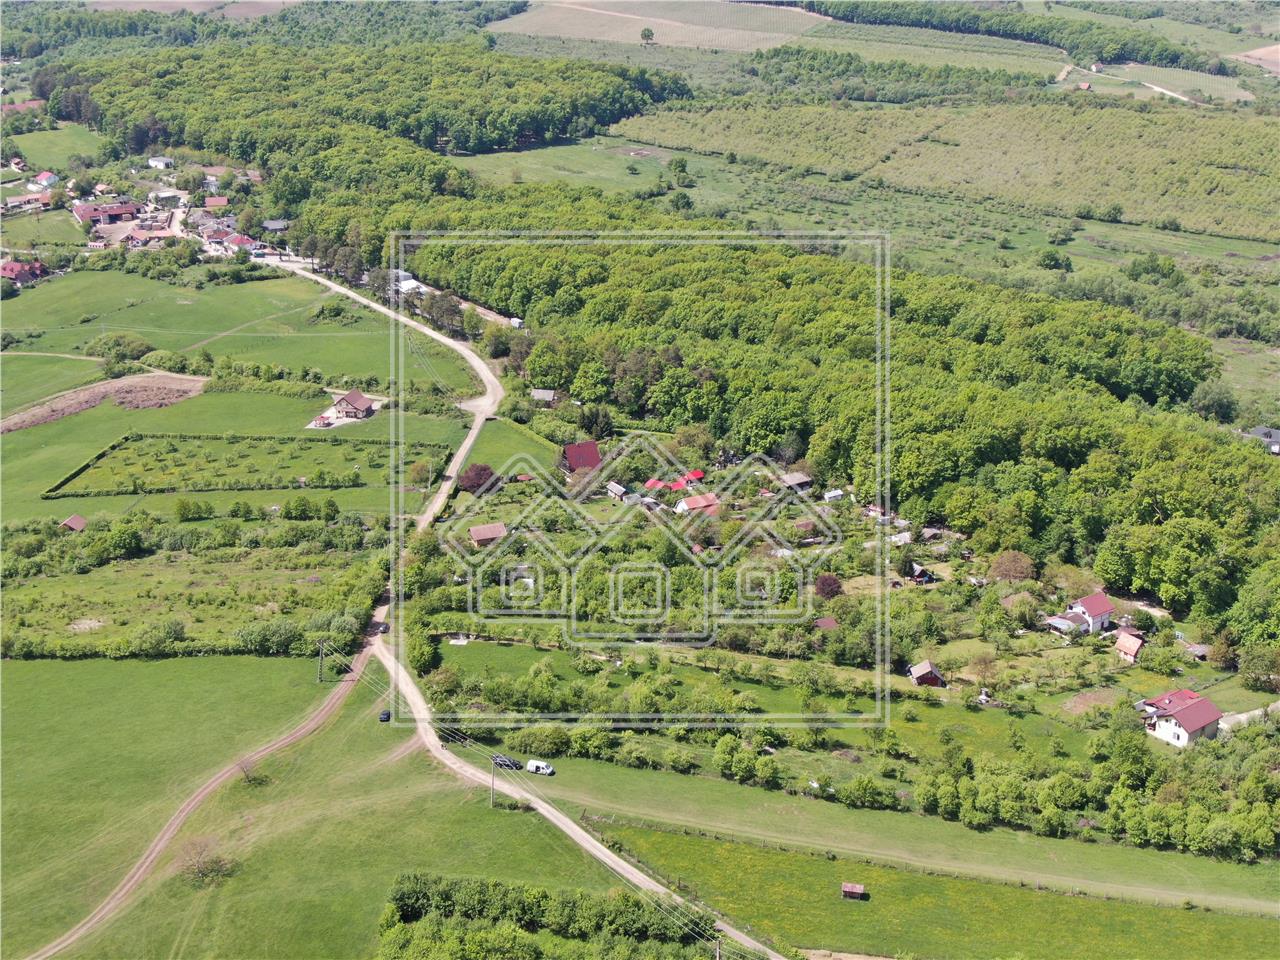 Teren de vanzare in Sibiu - Tocile - intravilan - 4210 mp